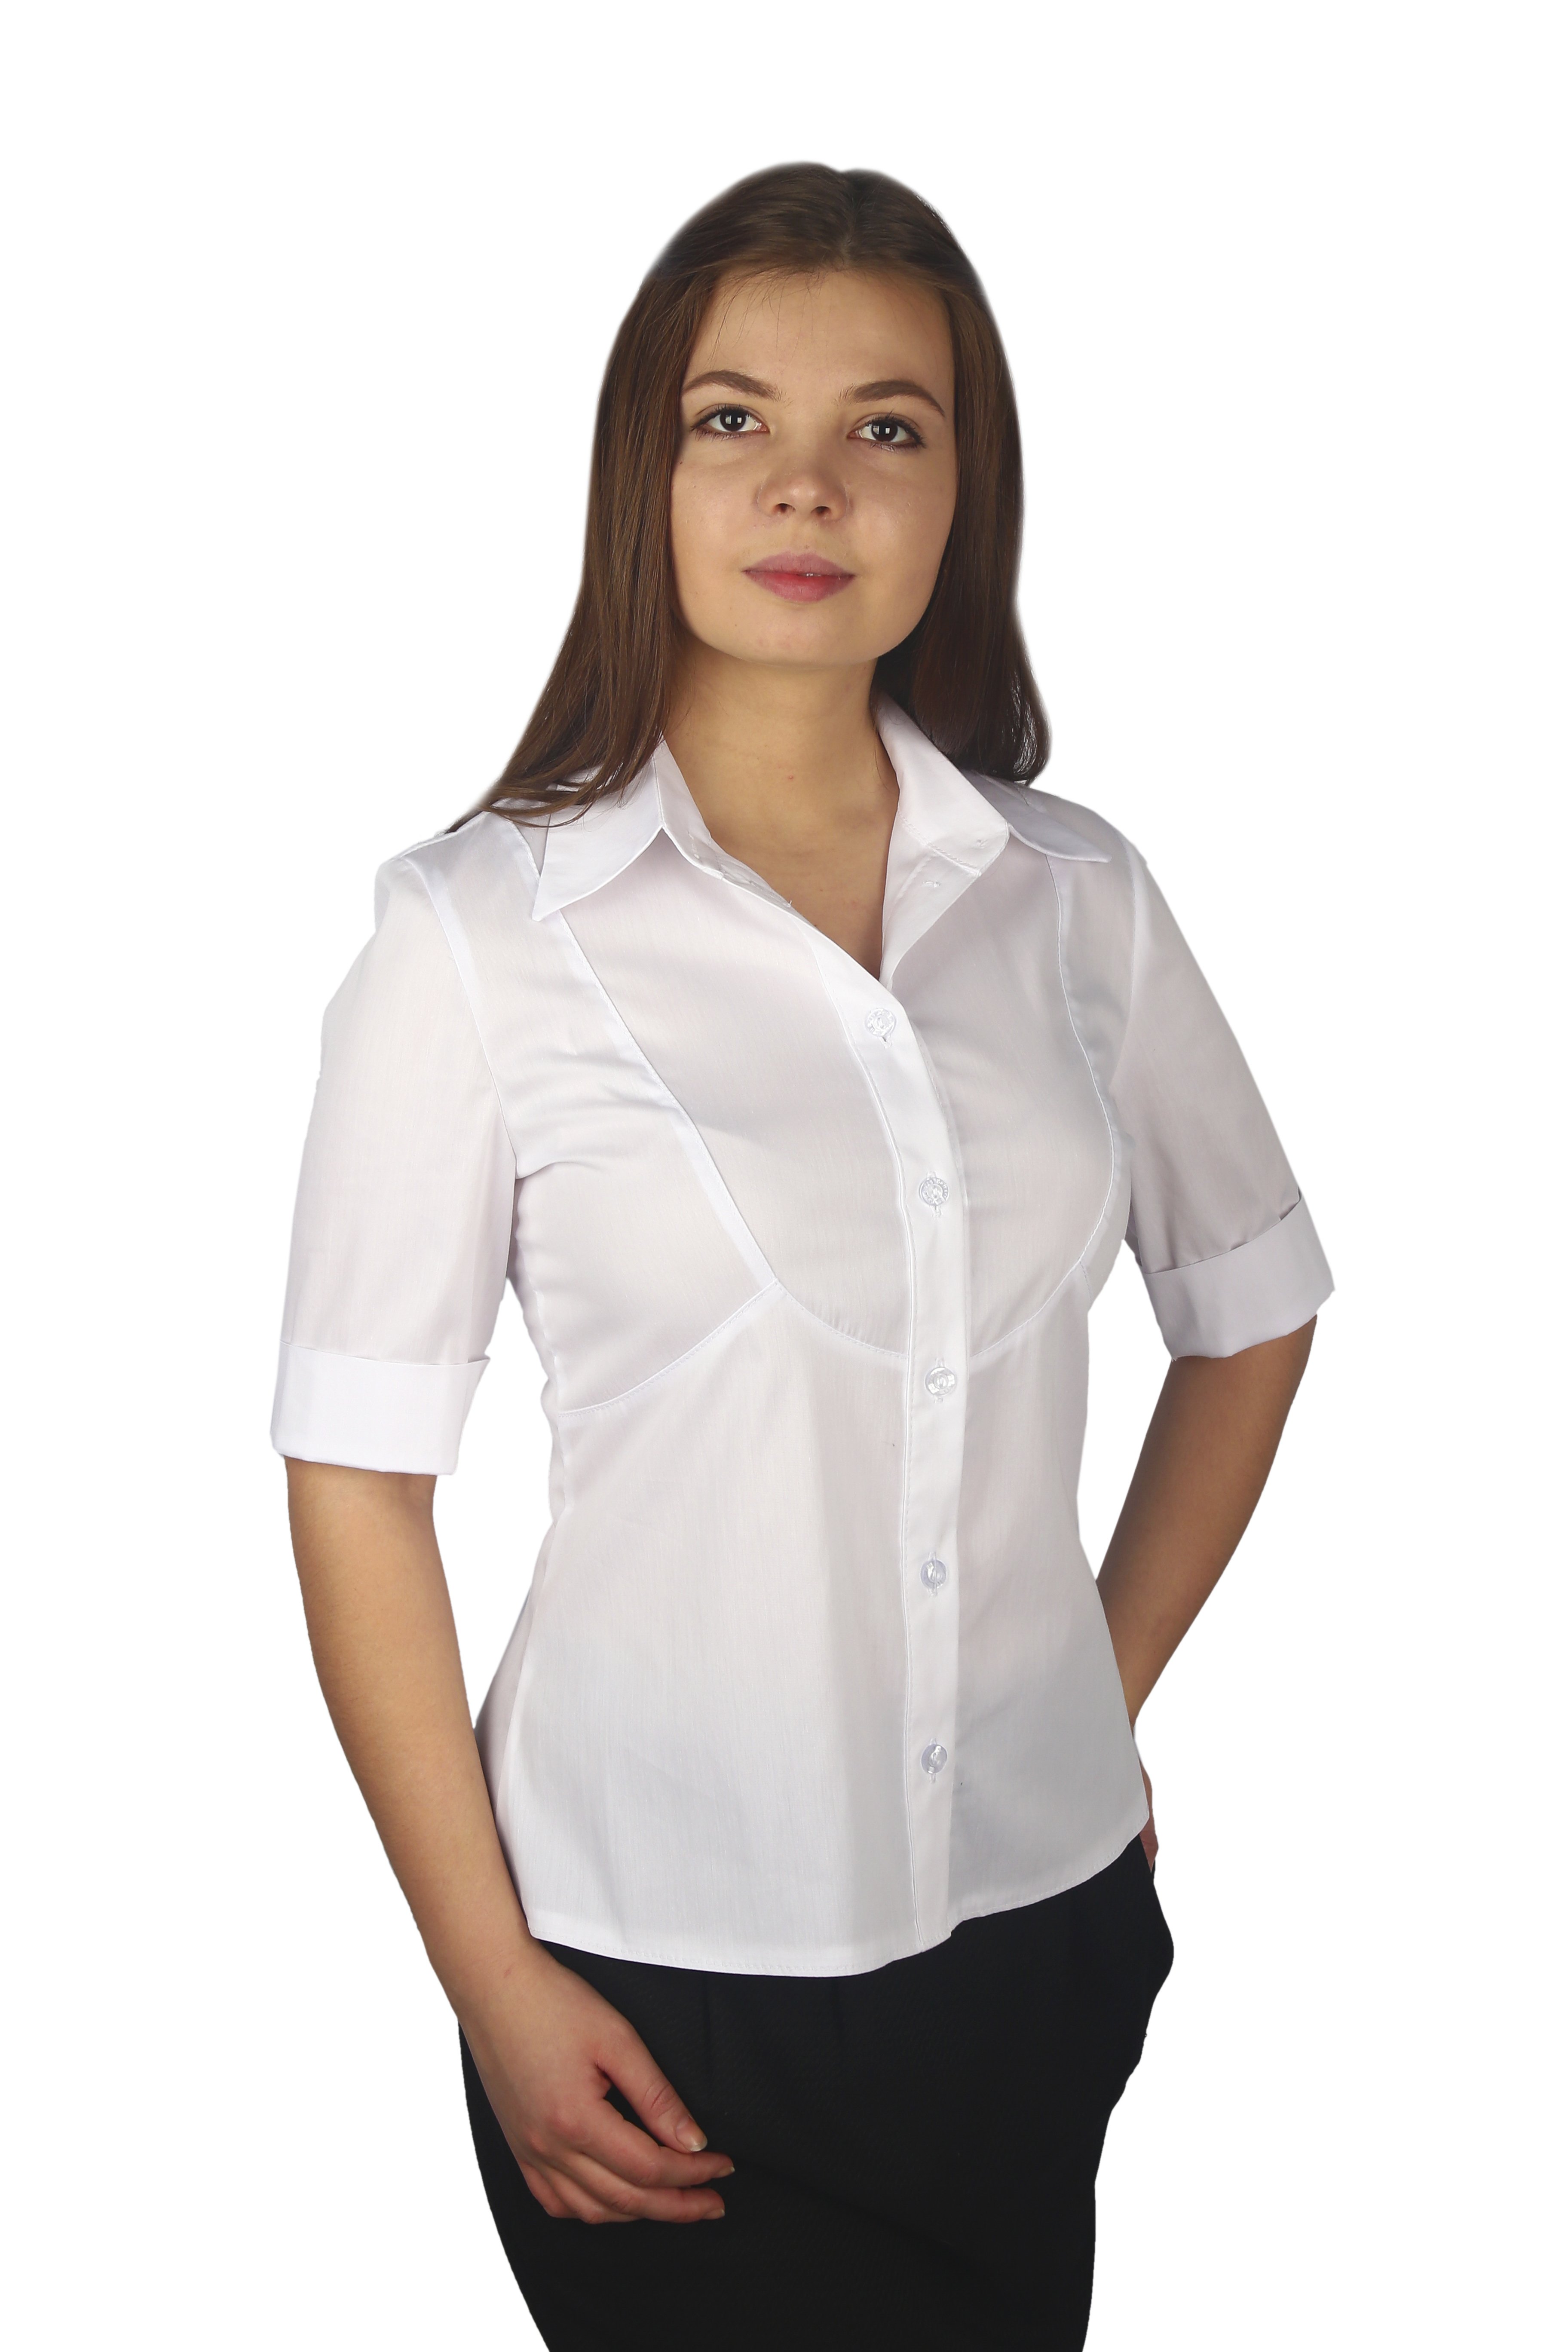 Где можно купить блузки. Блузка женская. Белая блузка. Белая блузка женская. Белая рубашка женская.